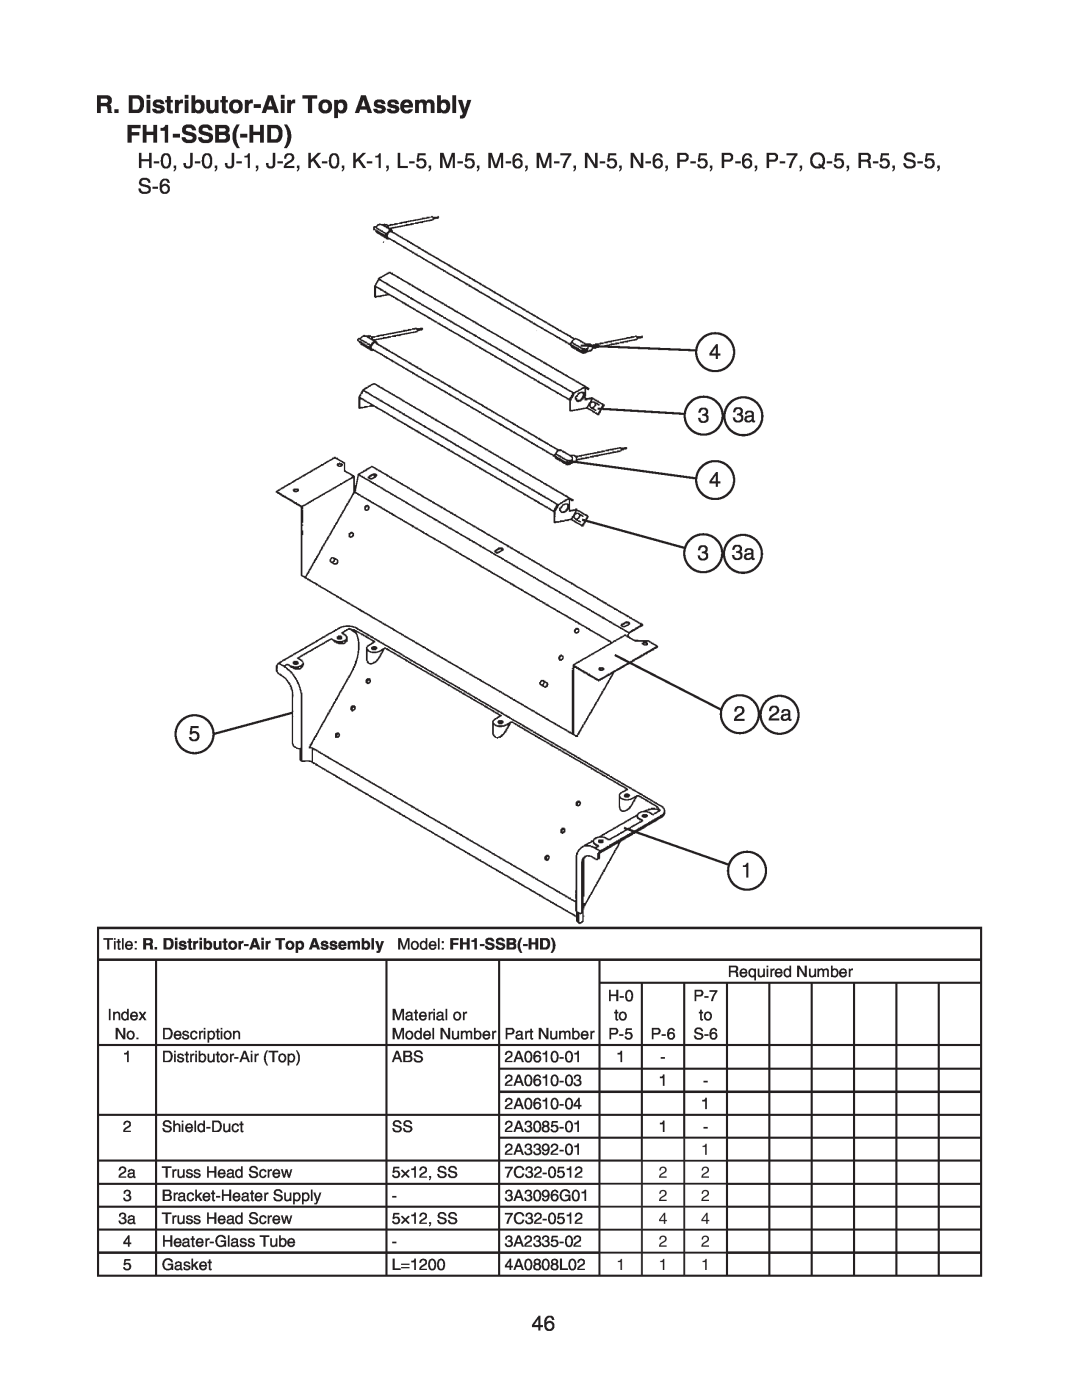 Hoshizaki FH1-SSB(-HD) manual R. Distributor-AirTop Assembly FH1-SSB-HD, 4 3 3a 4 3 3a 2 2a 